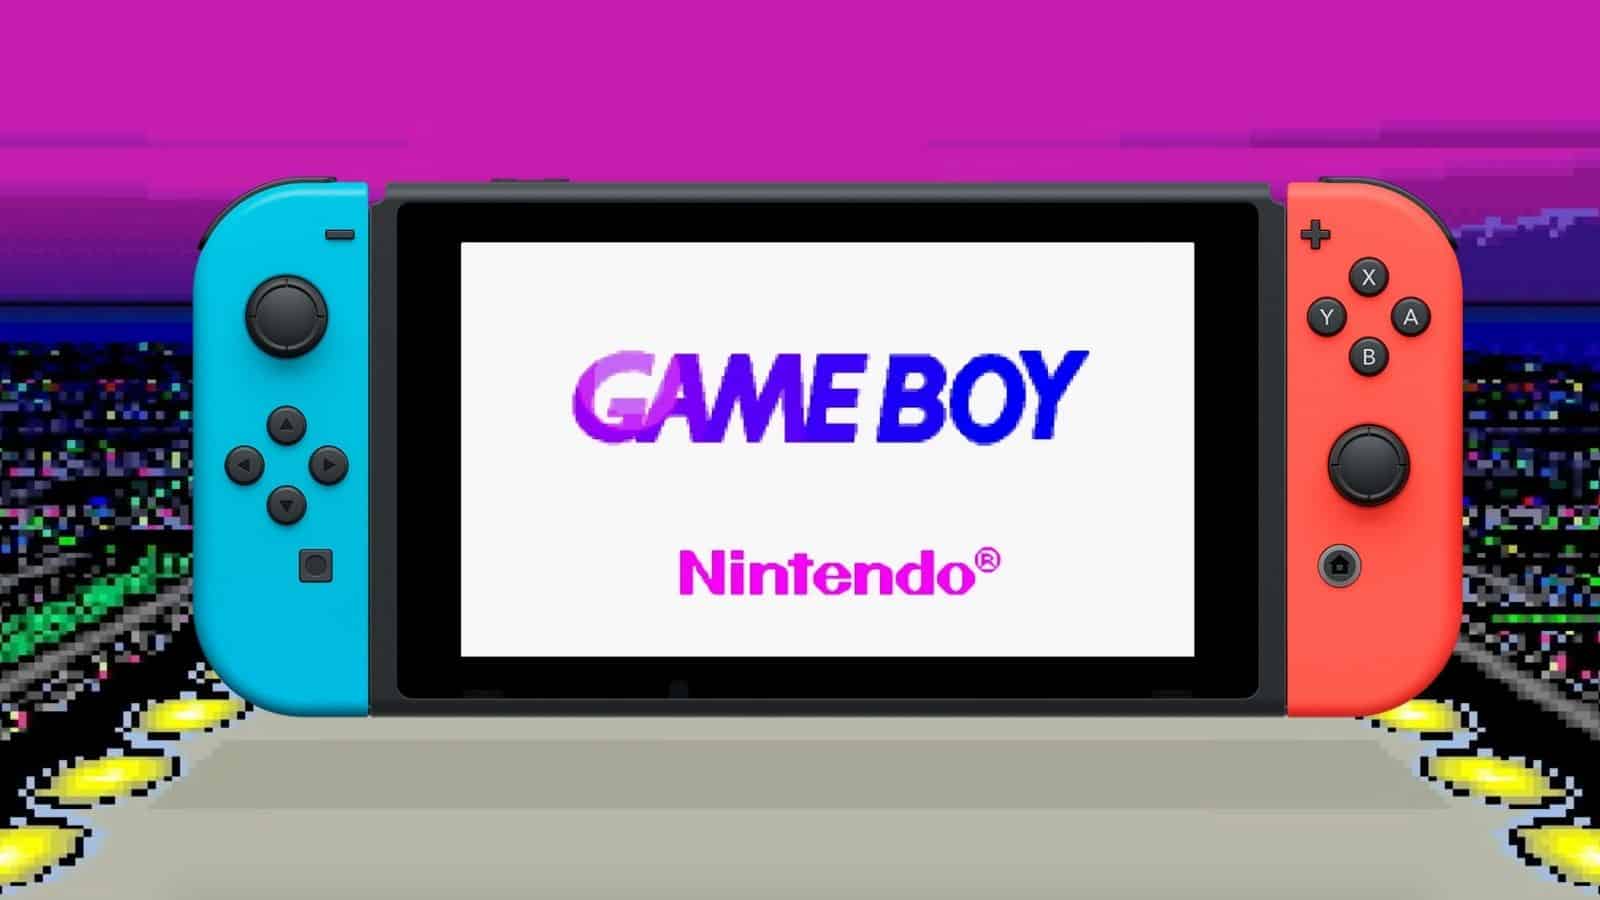 Emulador Game Boy Advance para a Switch? É oficial! - Leak